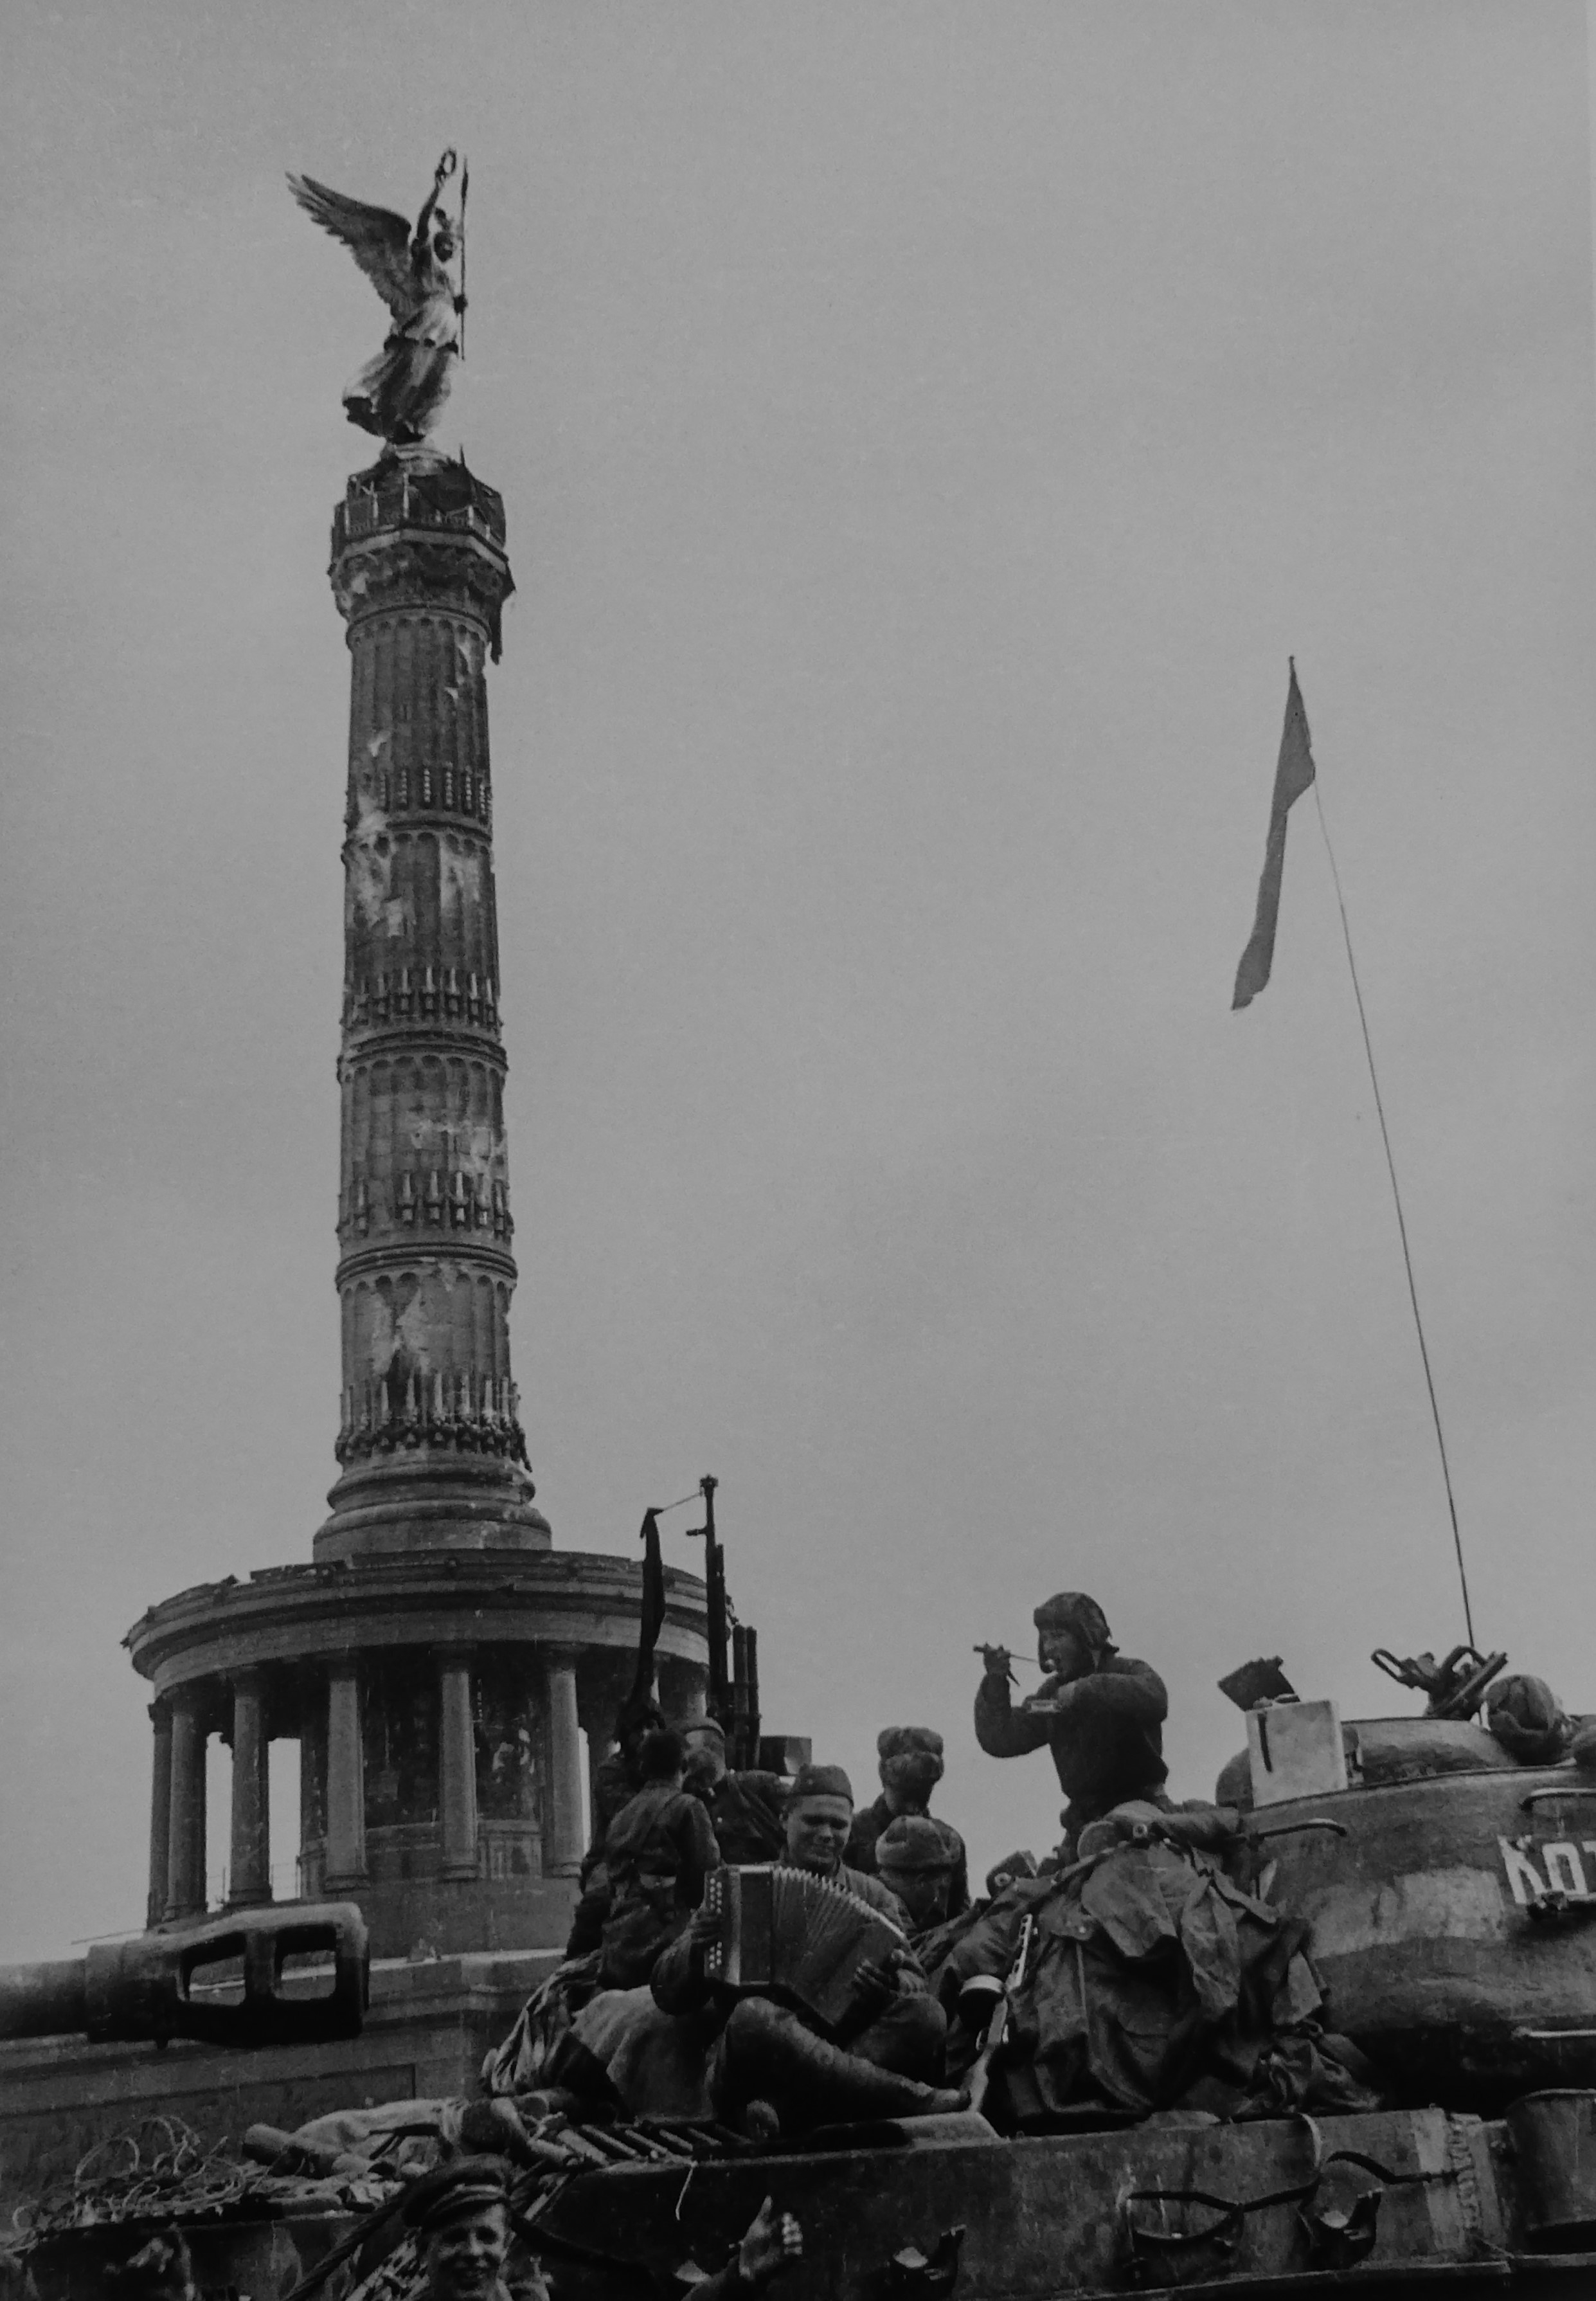 май 1945 года берлин